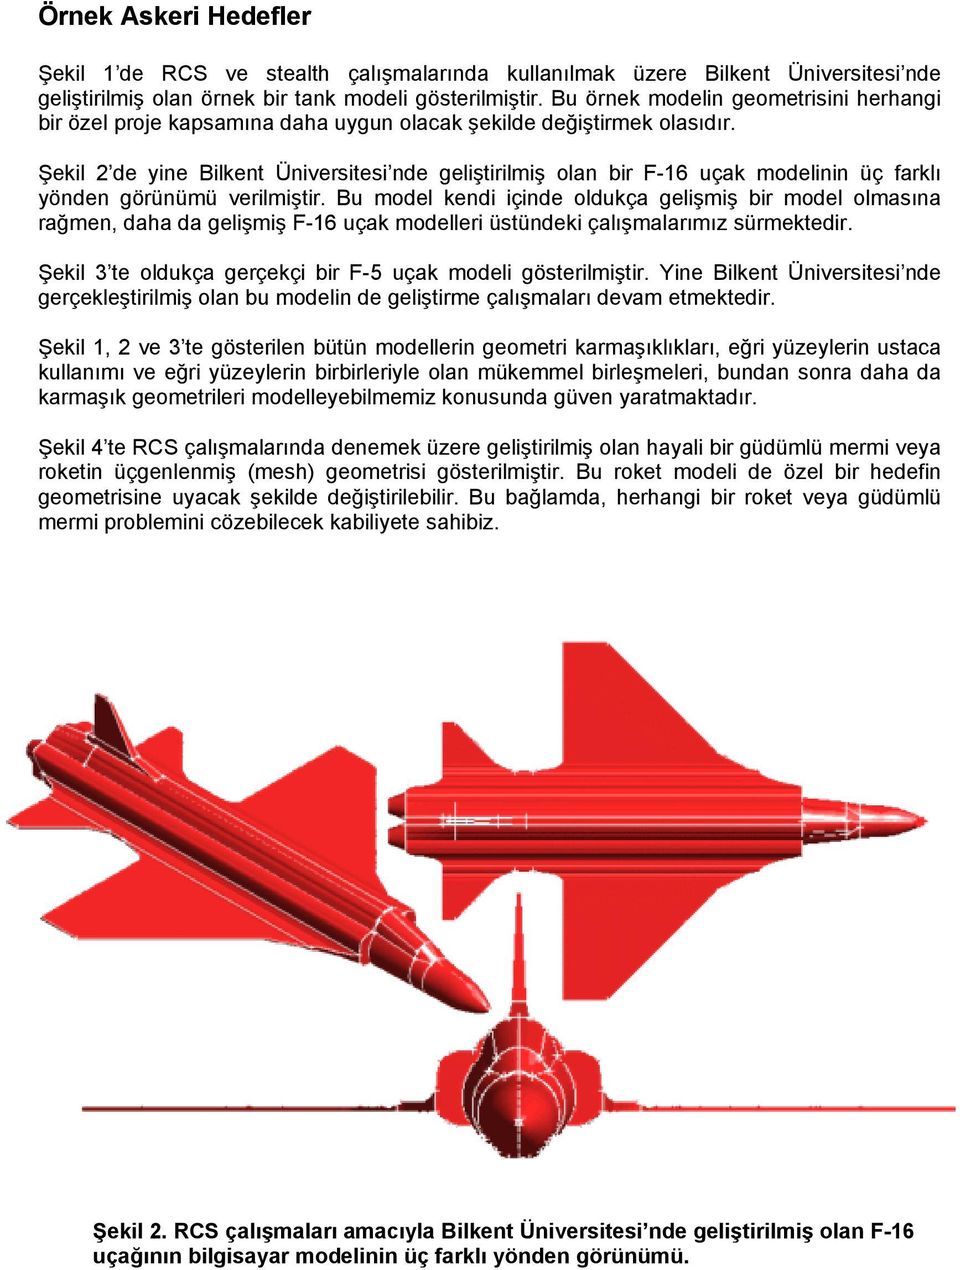 Şekil 2 de yine Bilkent Üniversitesi nde geliştirilmiş olan bir F-16 uçak modelinin üç farklı yönden görünümü verilmiştir.